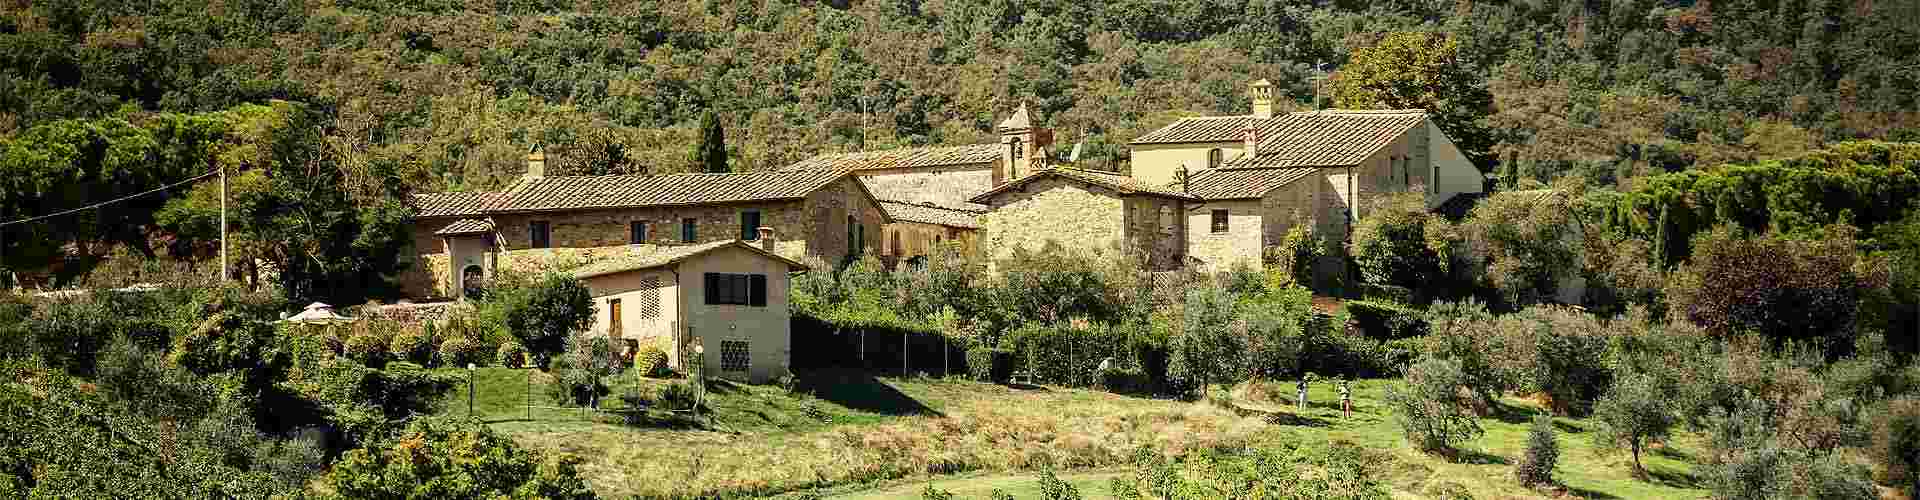 Casas rurales en Granja de Rocamora
           
           


          
          
          
